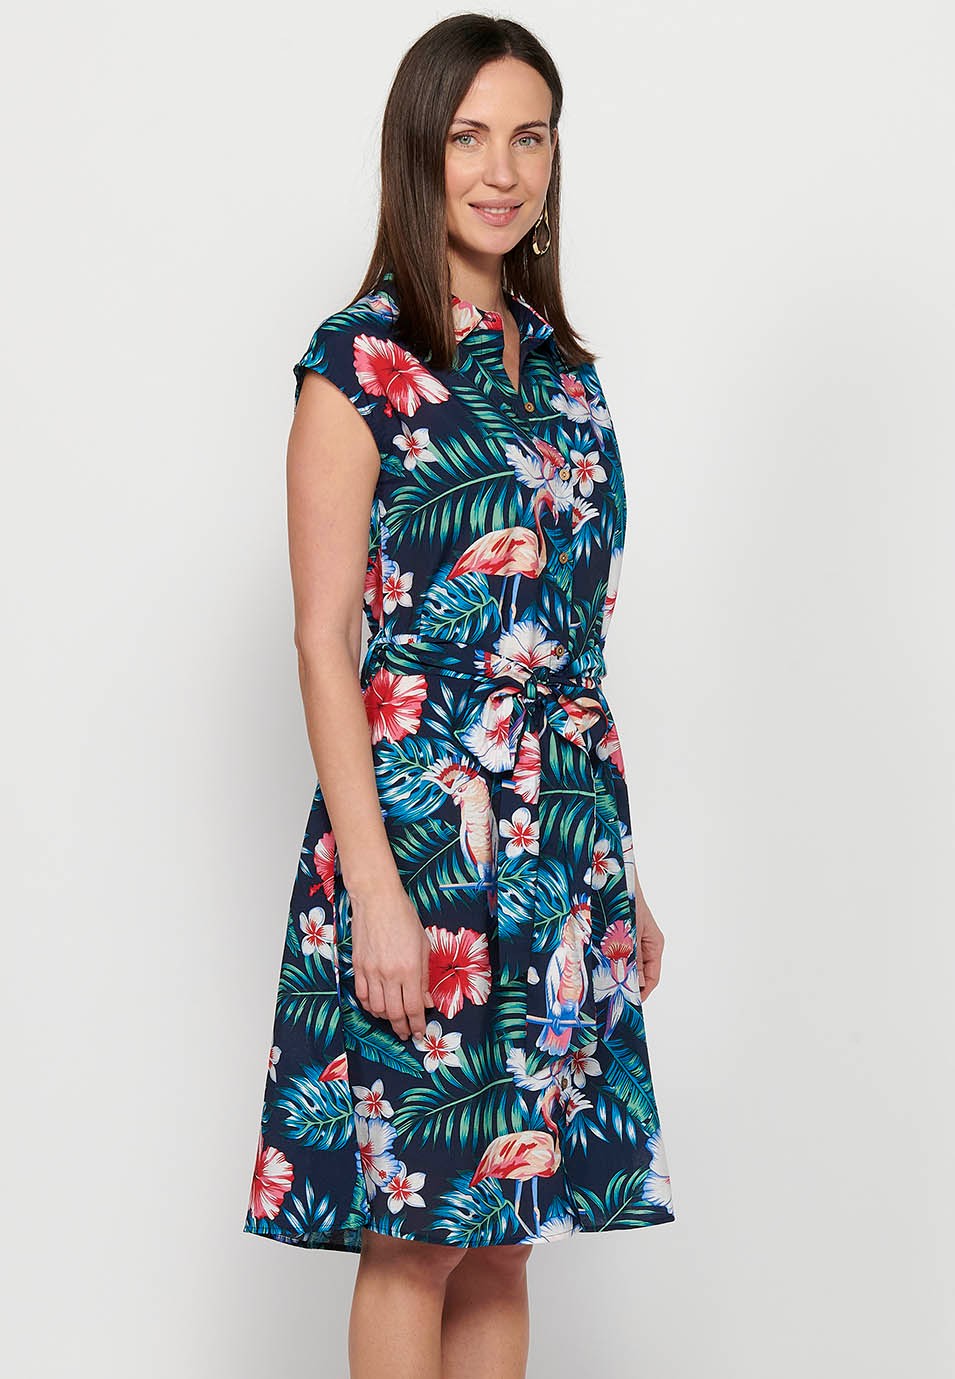 Robe chemise mi-longue à imprimé Floral multicolore pour femmes, manches courtes, fermeture boutonnée sur le devant 5